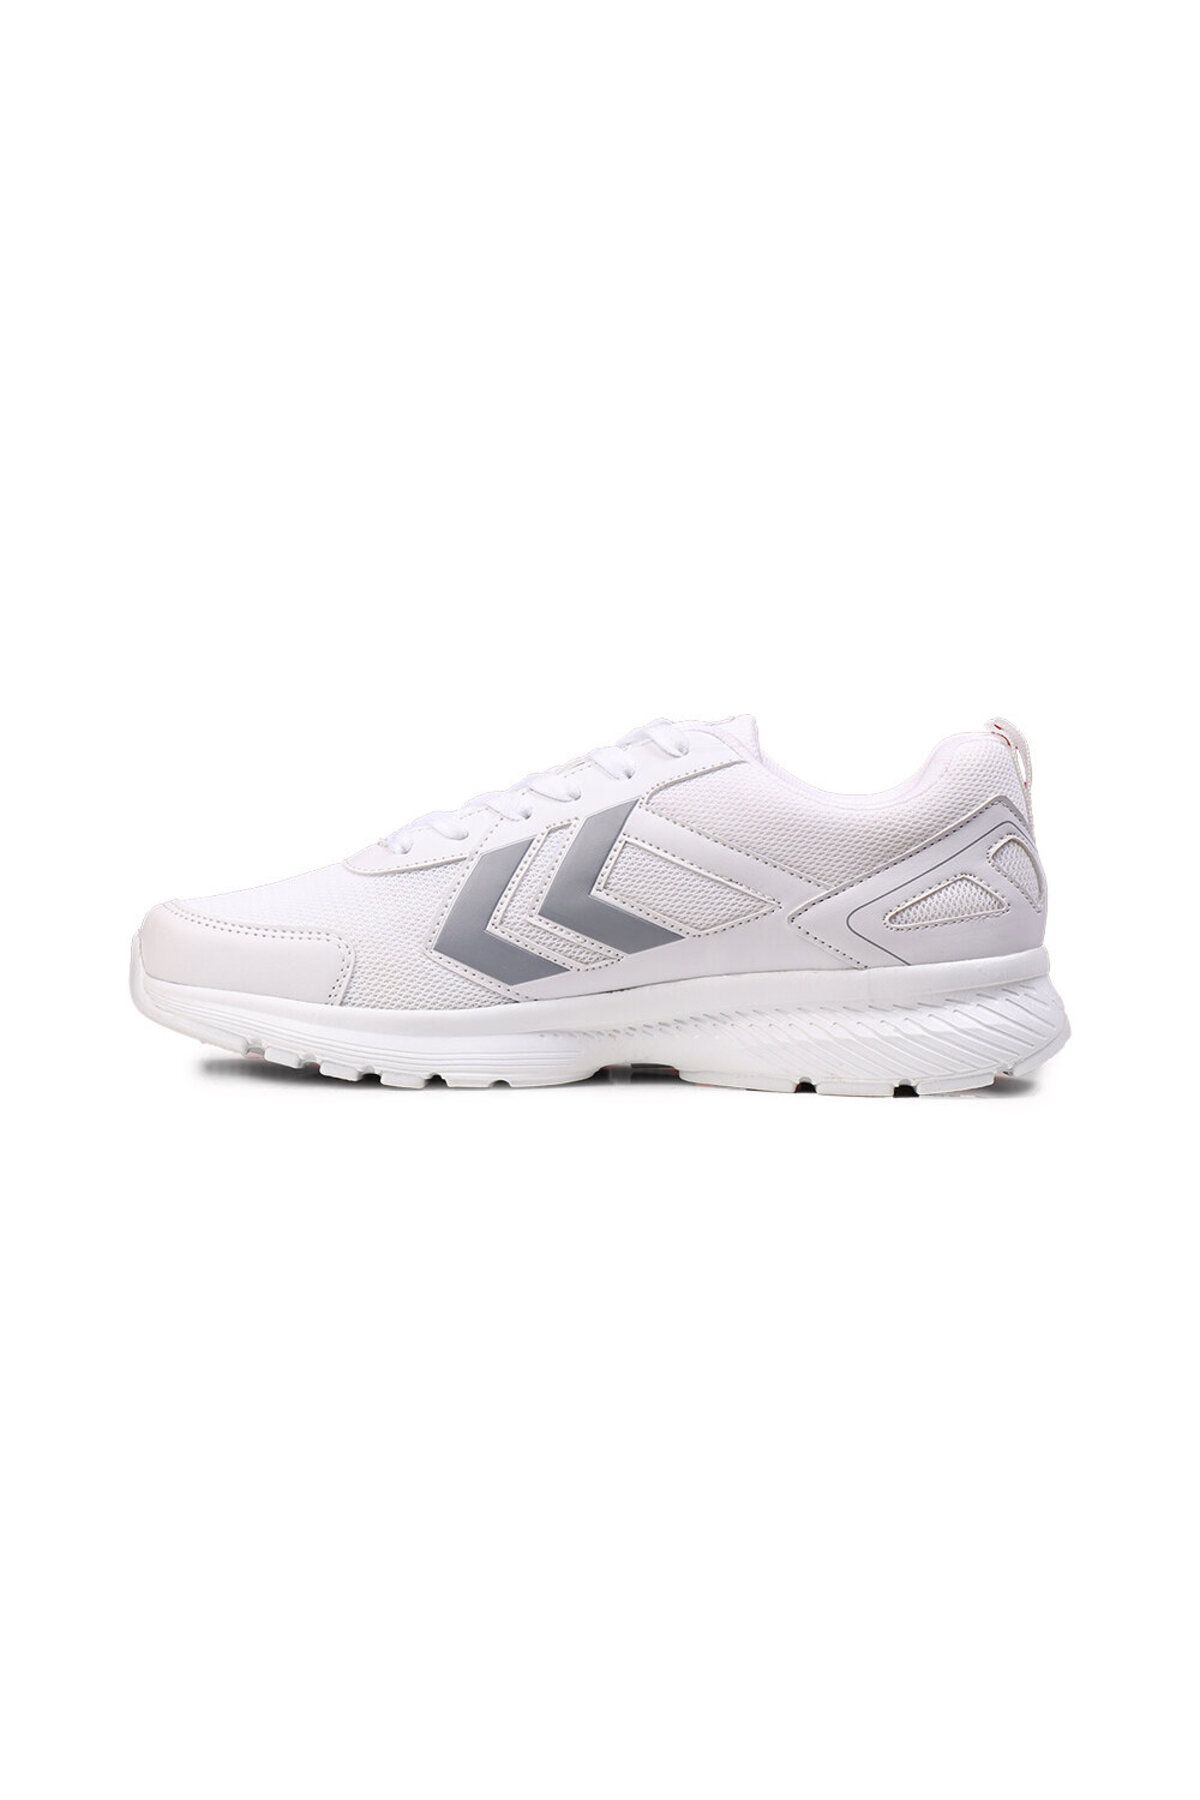 Unisex Beyaz Koşu & Antrenman Ayakkabısı - Hmlrush Sneaker (Spe